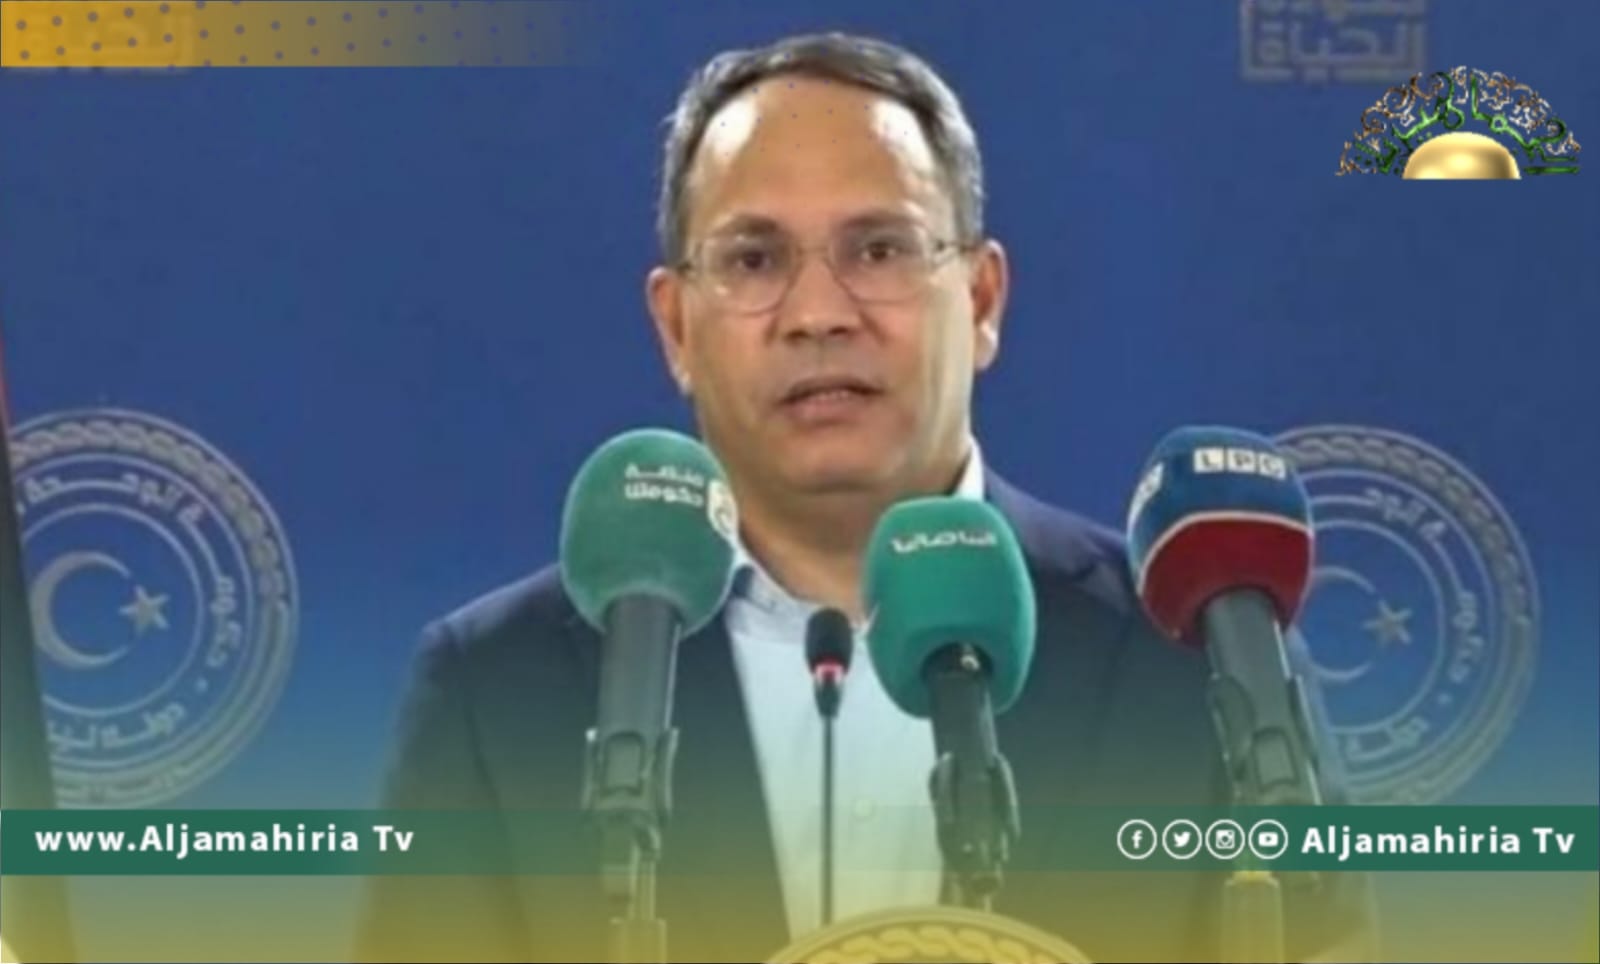 عادل جمعة وزير الدولة يهين صحفية ليبية ويطالبها بعدم حضور مؤتمراته الصحفية